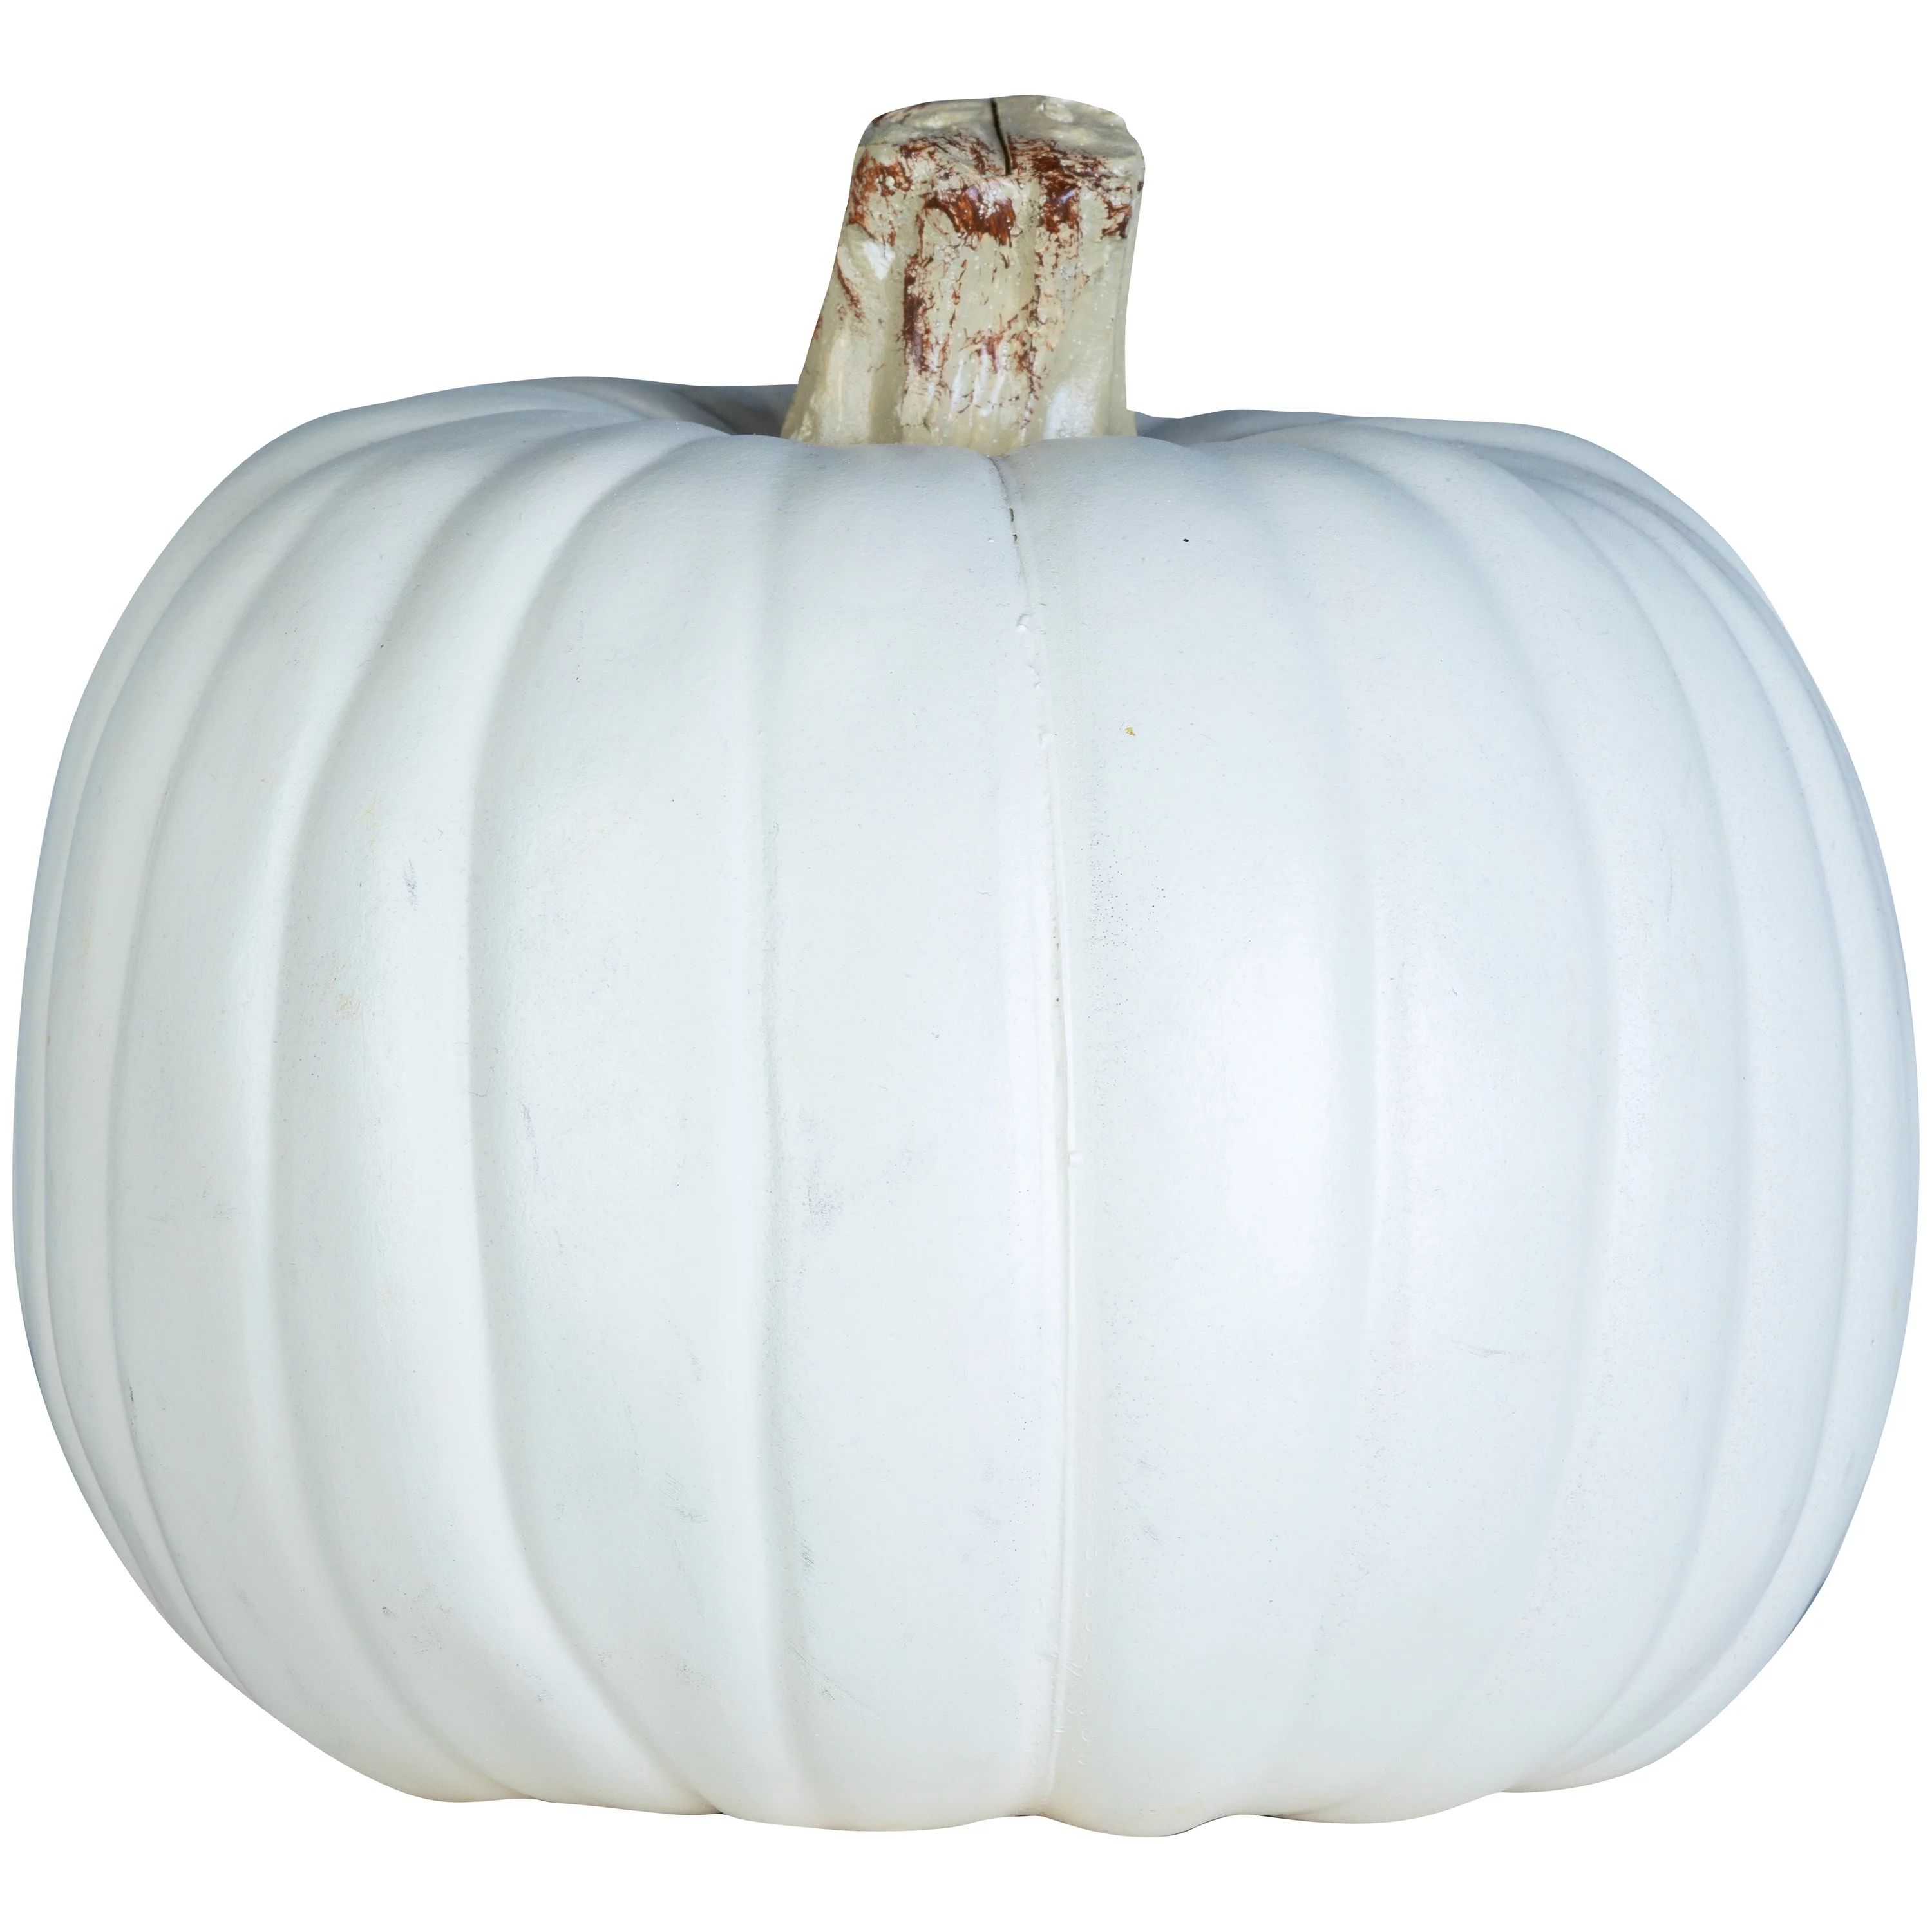 Way To Celebrate! 9in White Craft Pumpkin Pallet | Walmart (US)